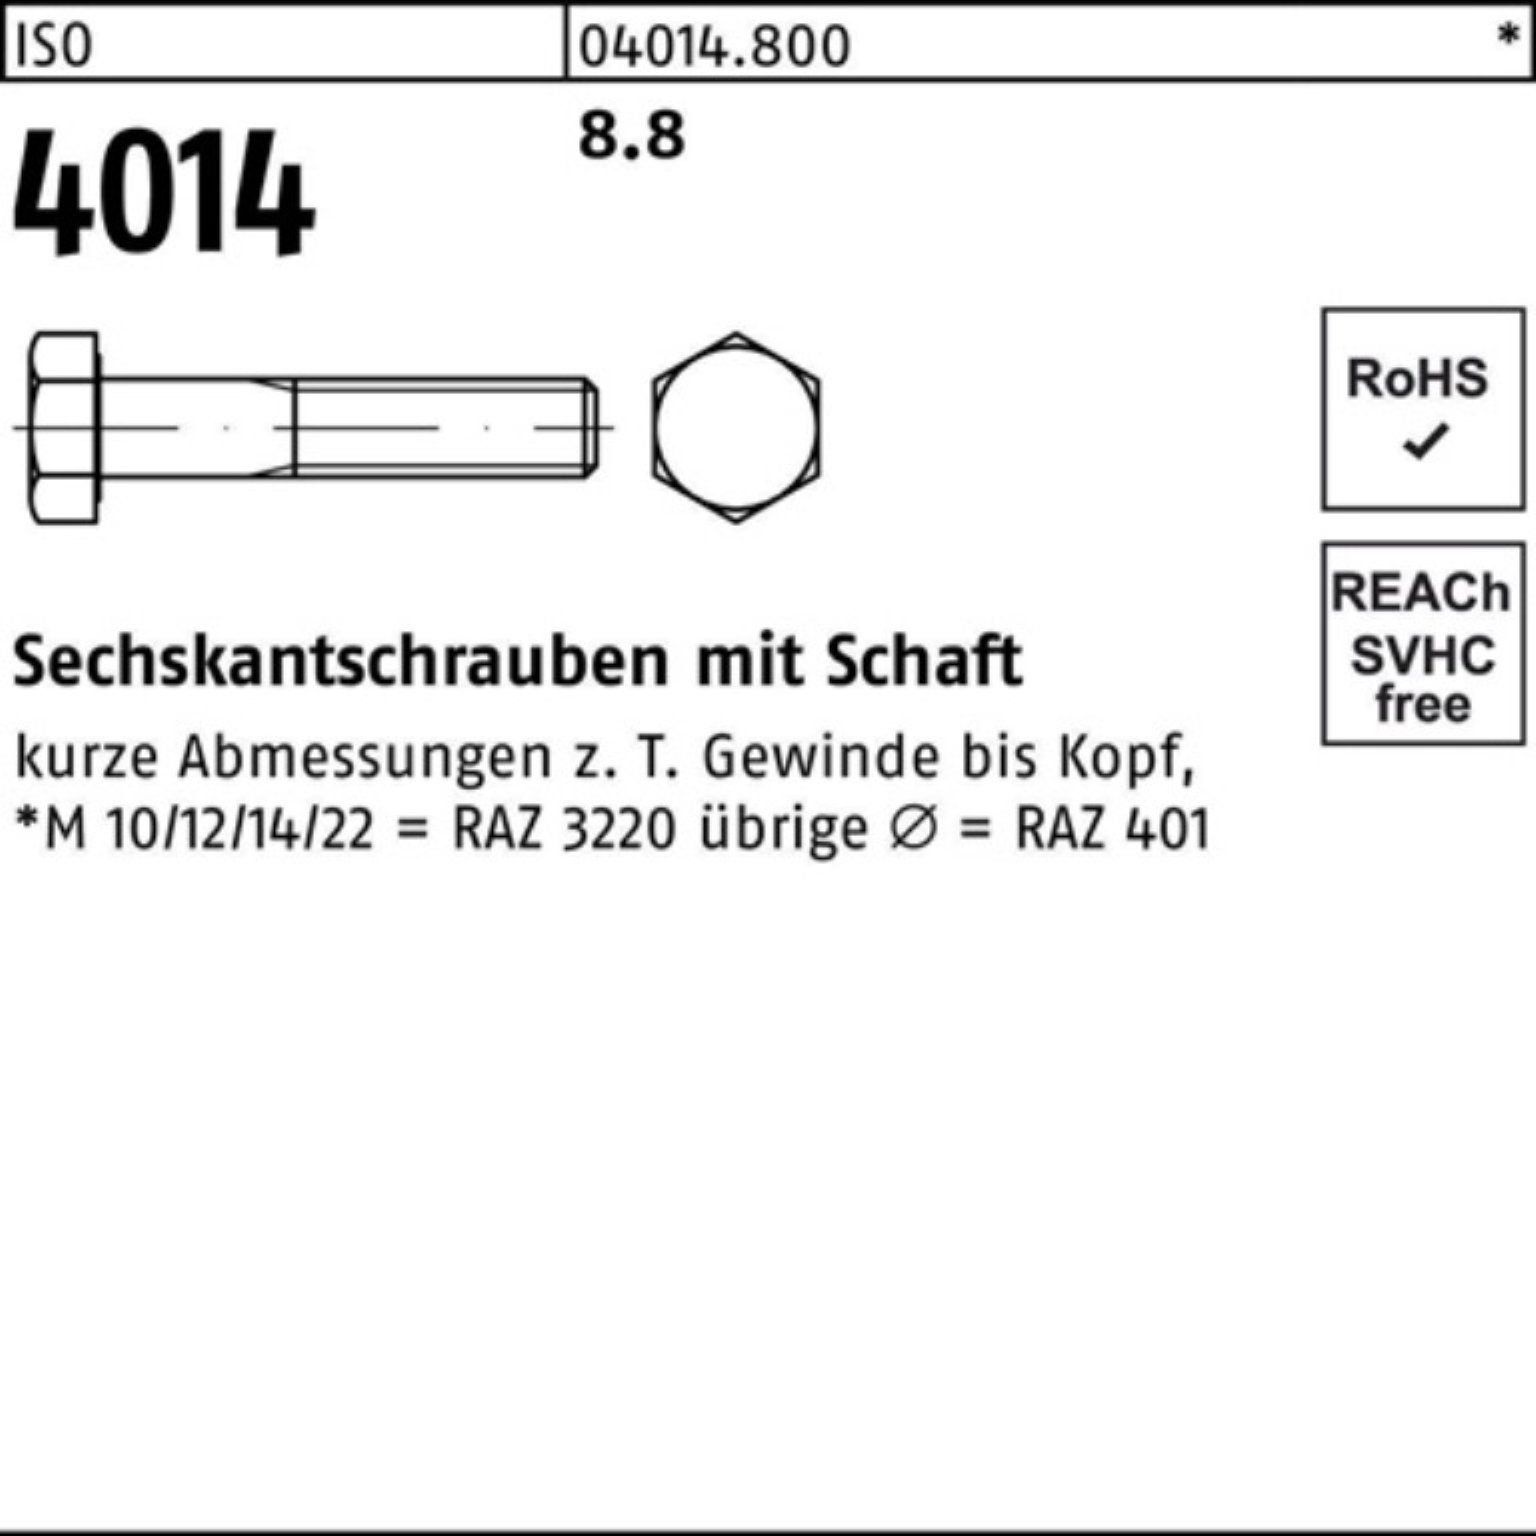 Stück Bufab 100er 4014 Sechskantschraube ISO 8.8 IS Sechskantschraube M10x Pack Schaft 210 50